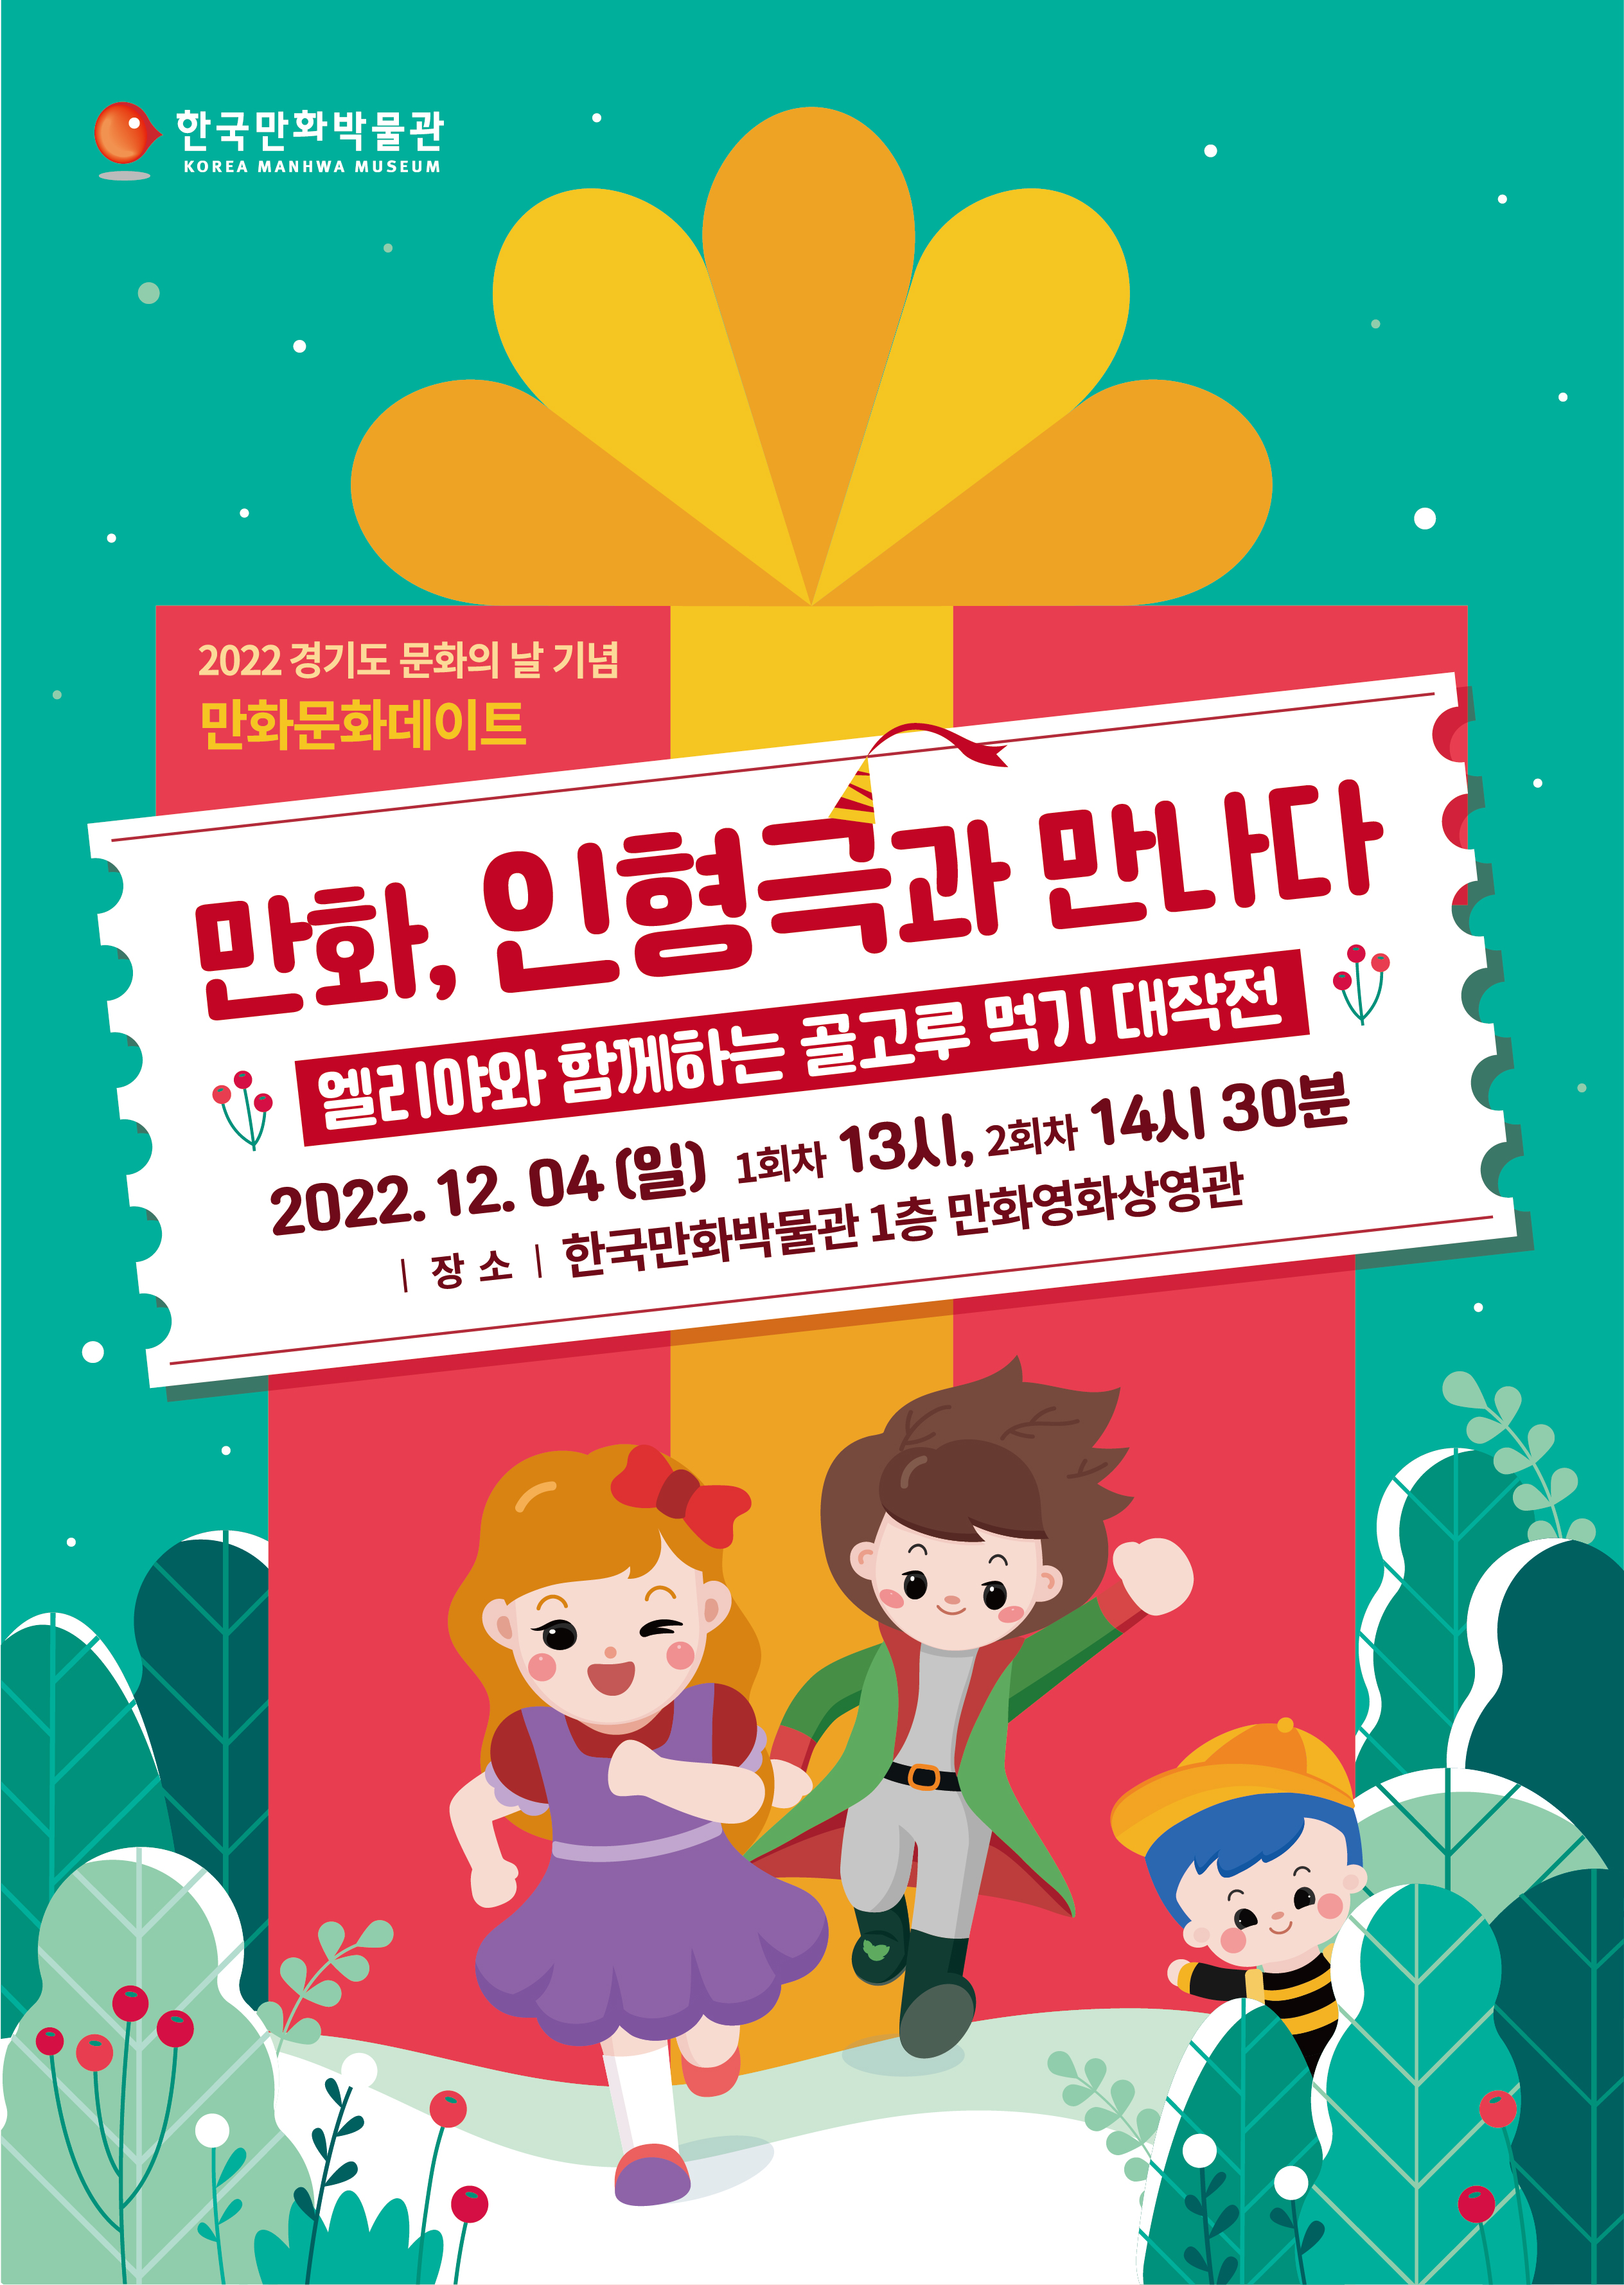 [경기도 문화의 날 기념] 12월 4일(일), 어린이 뮤지컬 무료 초청 행사 개최!!